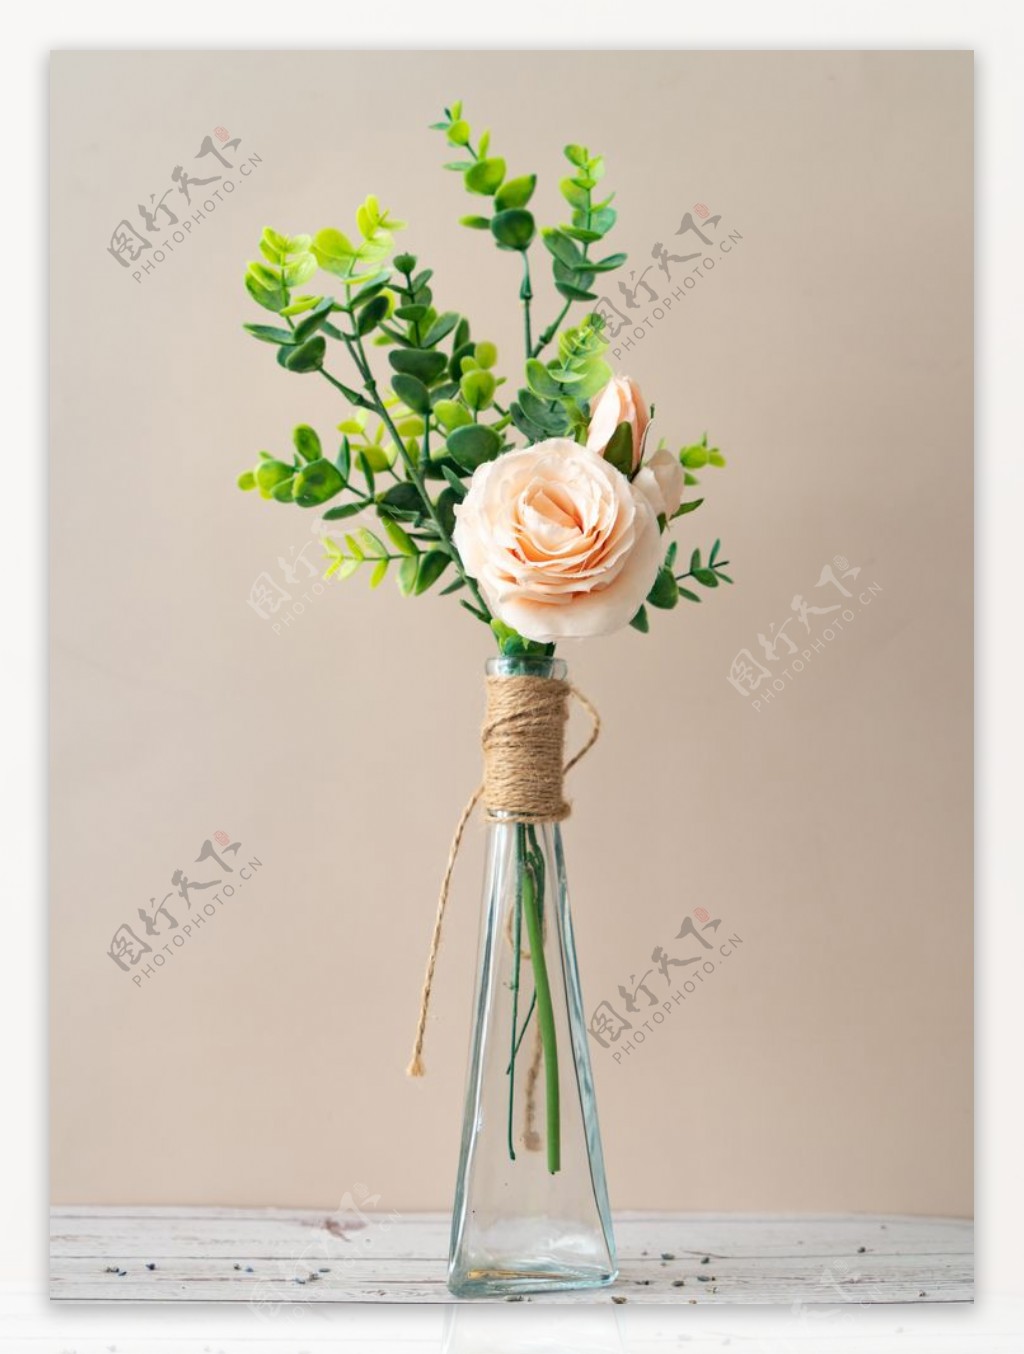 花瓶里的浅粉色玫瑰拍摄特写图片